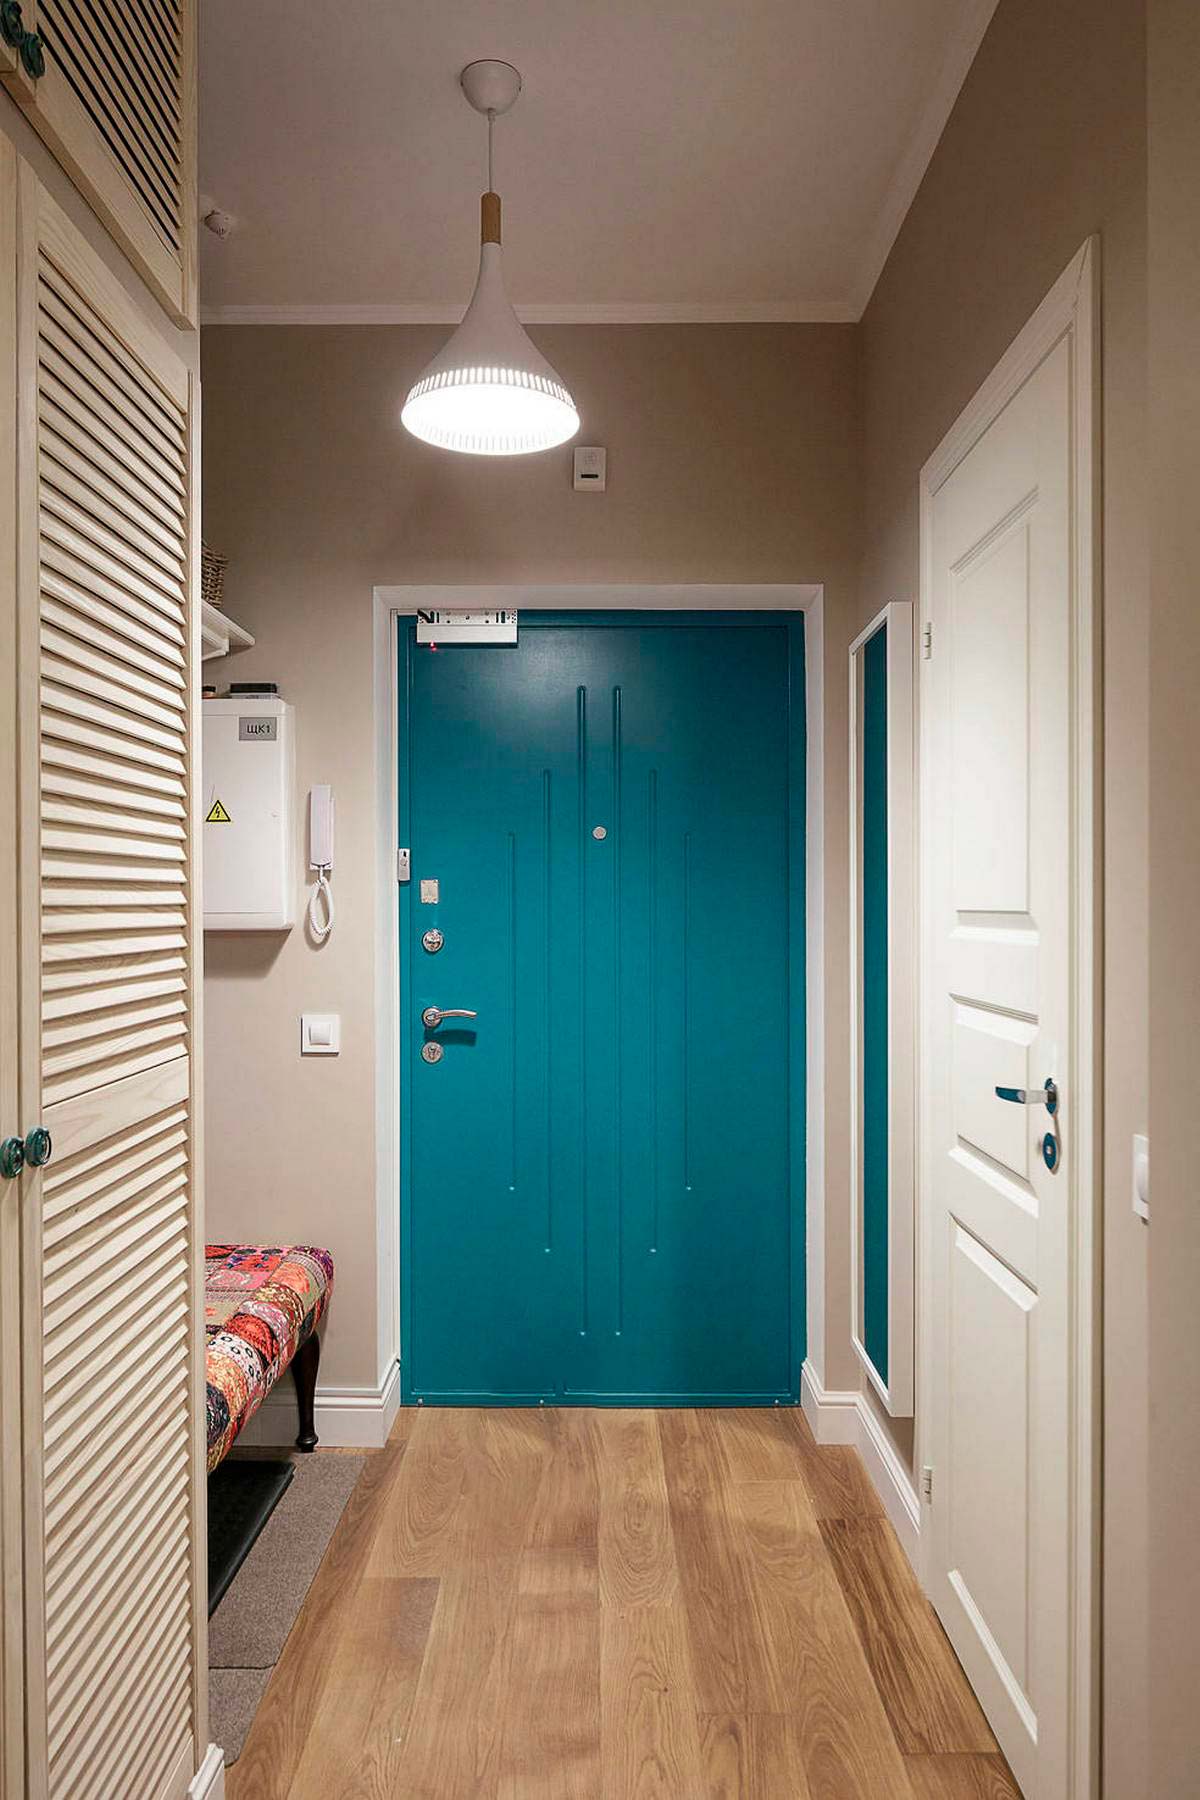 Sảnh vào nhà thu hút với cánh cửa màu xanh lam đậm nổi bật giữa sơn tường màu be đậm và sàn gỗ ấm áp. Chiếc đèn trần chiếu sáng nhẹ nhàng tạo sự gần gũi từ cái nhìn đầu tiên.